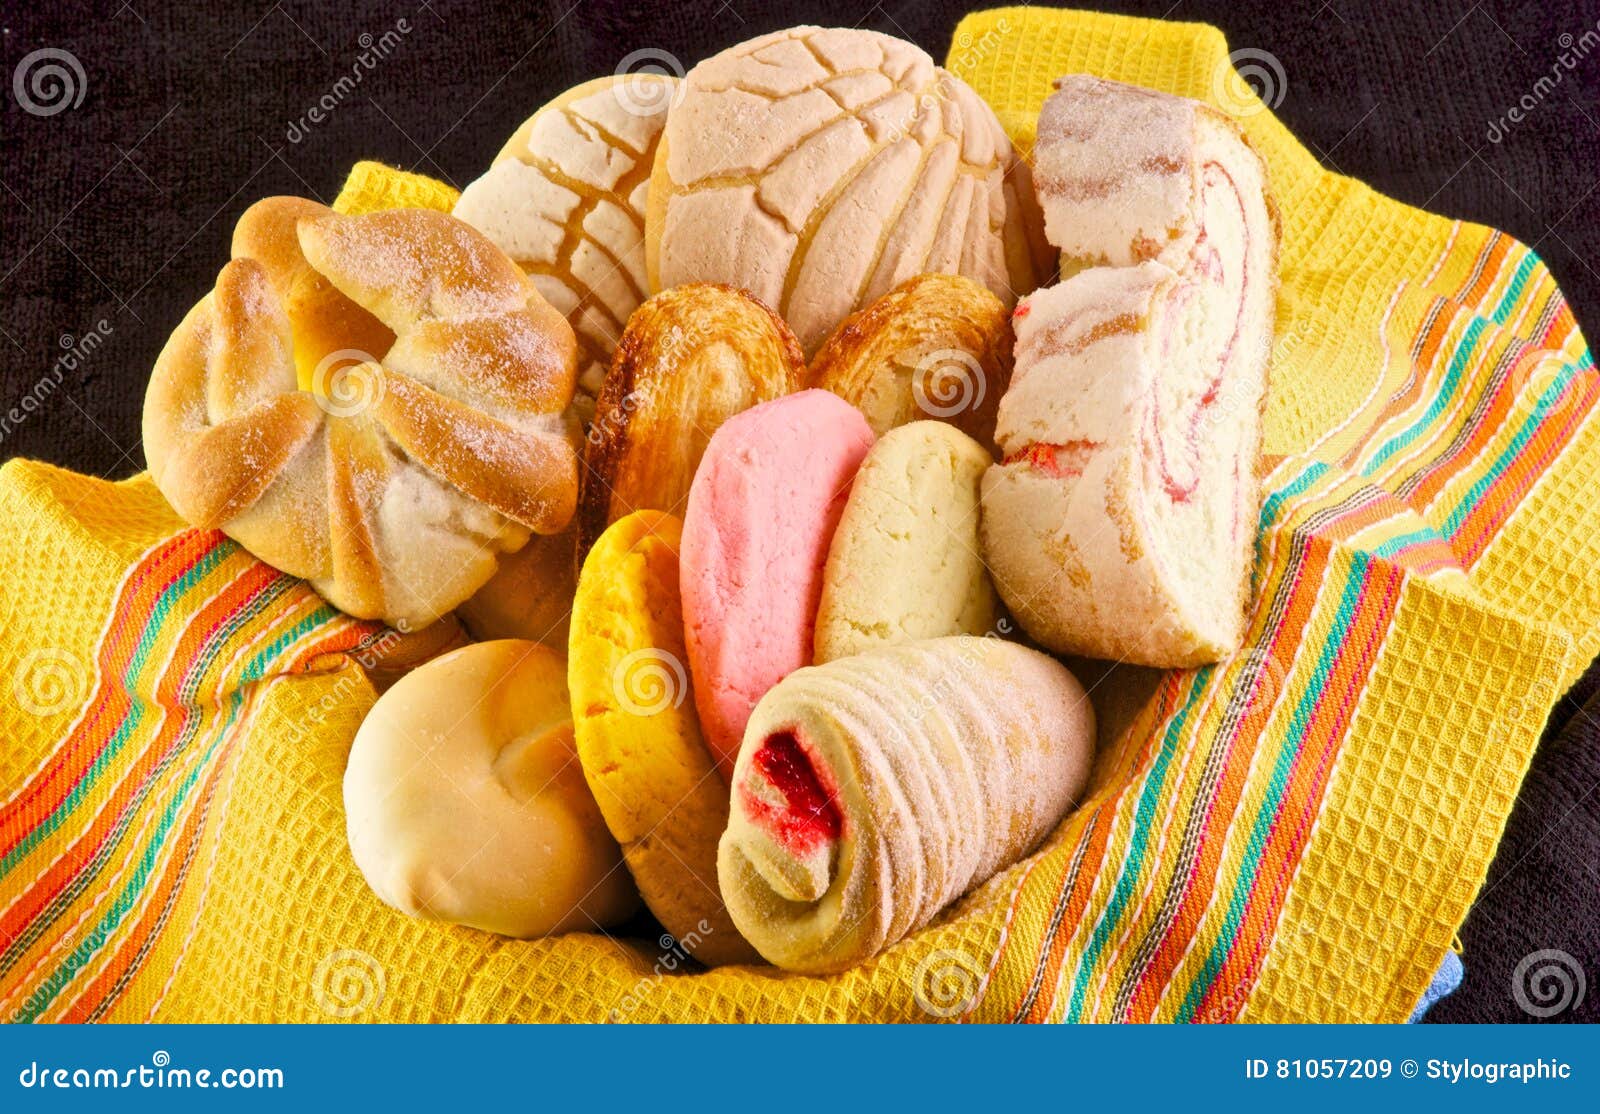 墨西哥面包的做法_墨西哥面包怎么做_墨西哥面包的家常做法_红九九【心食谱】